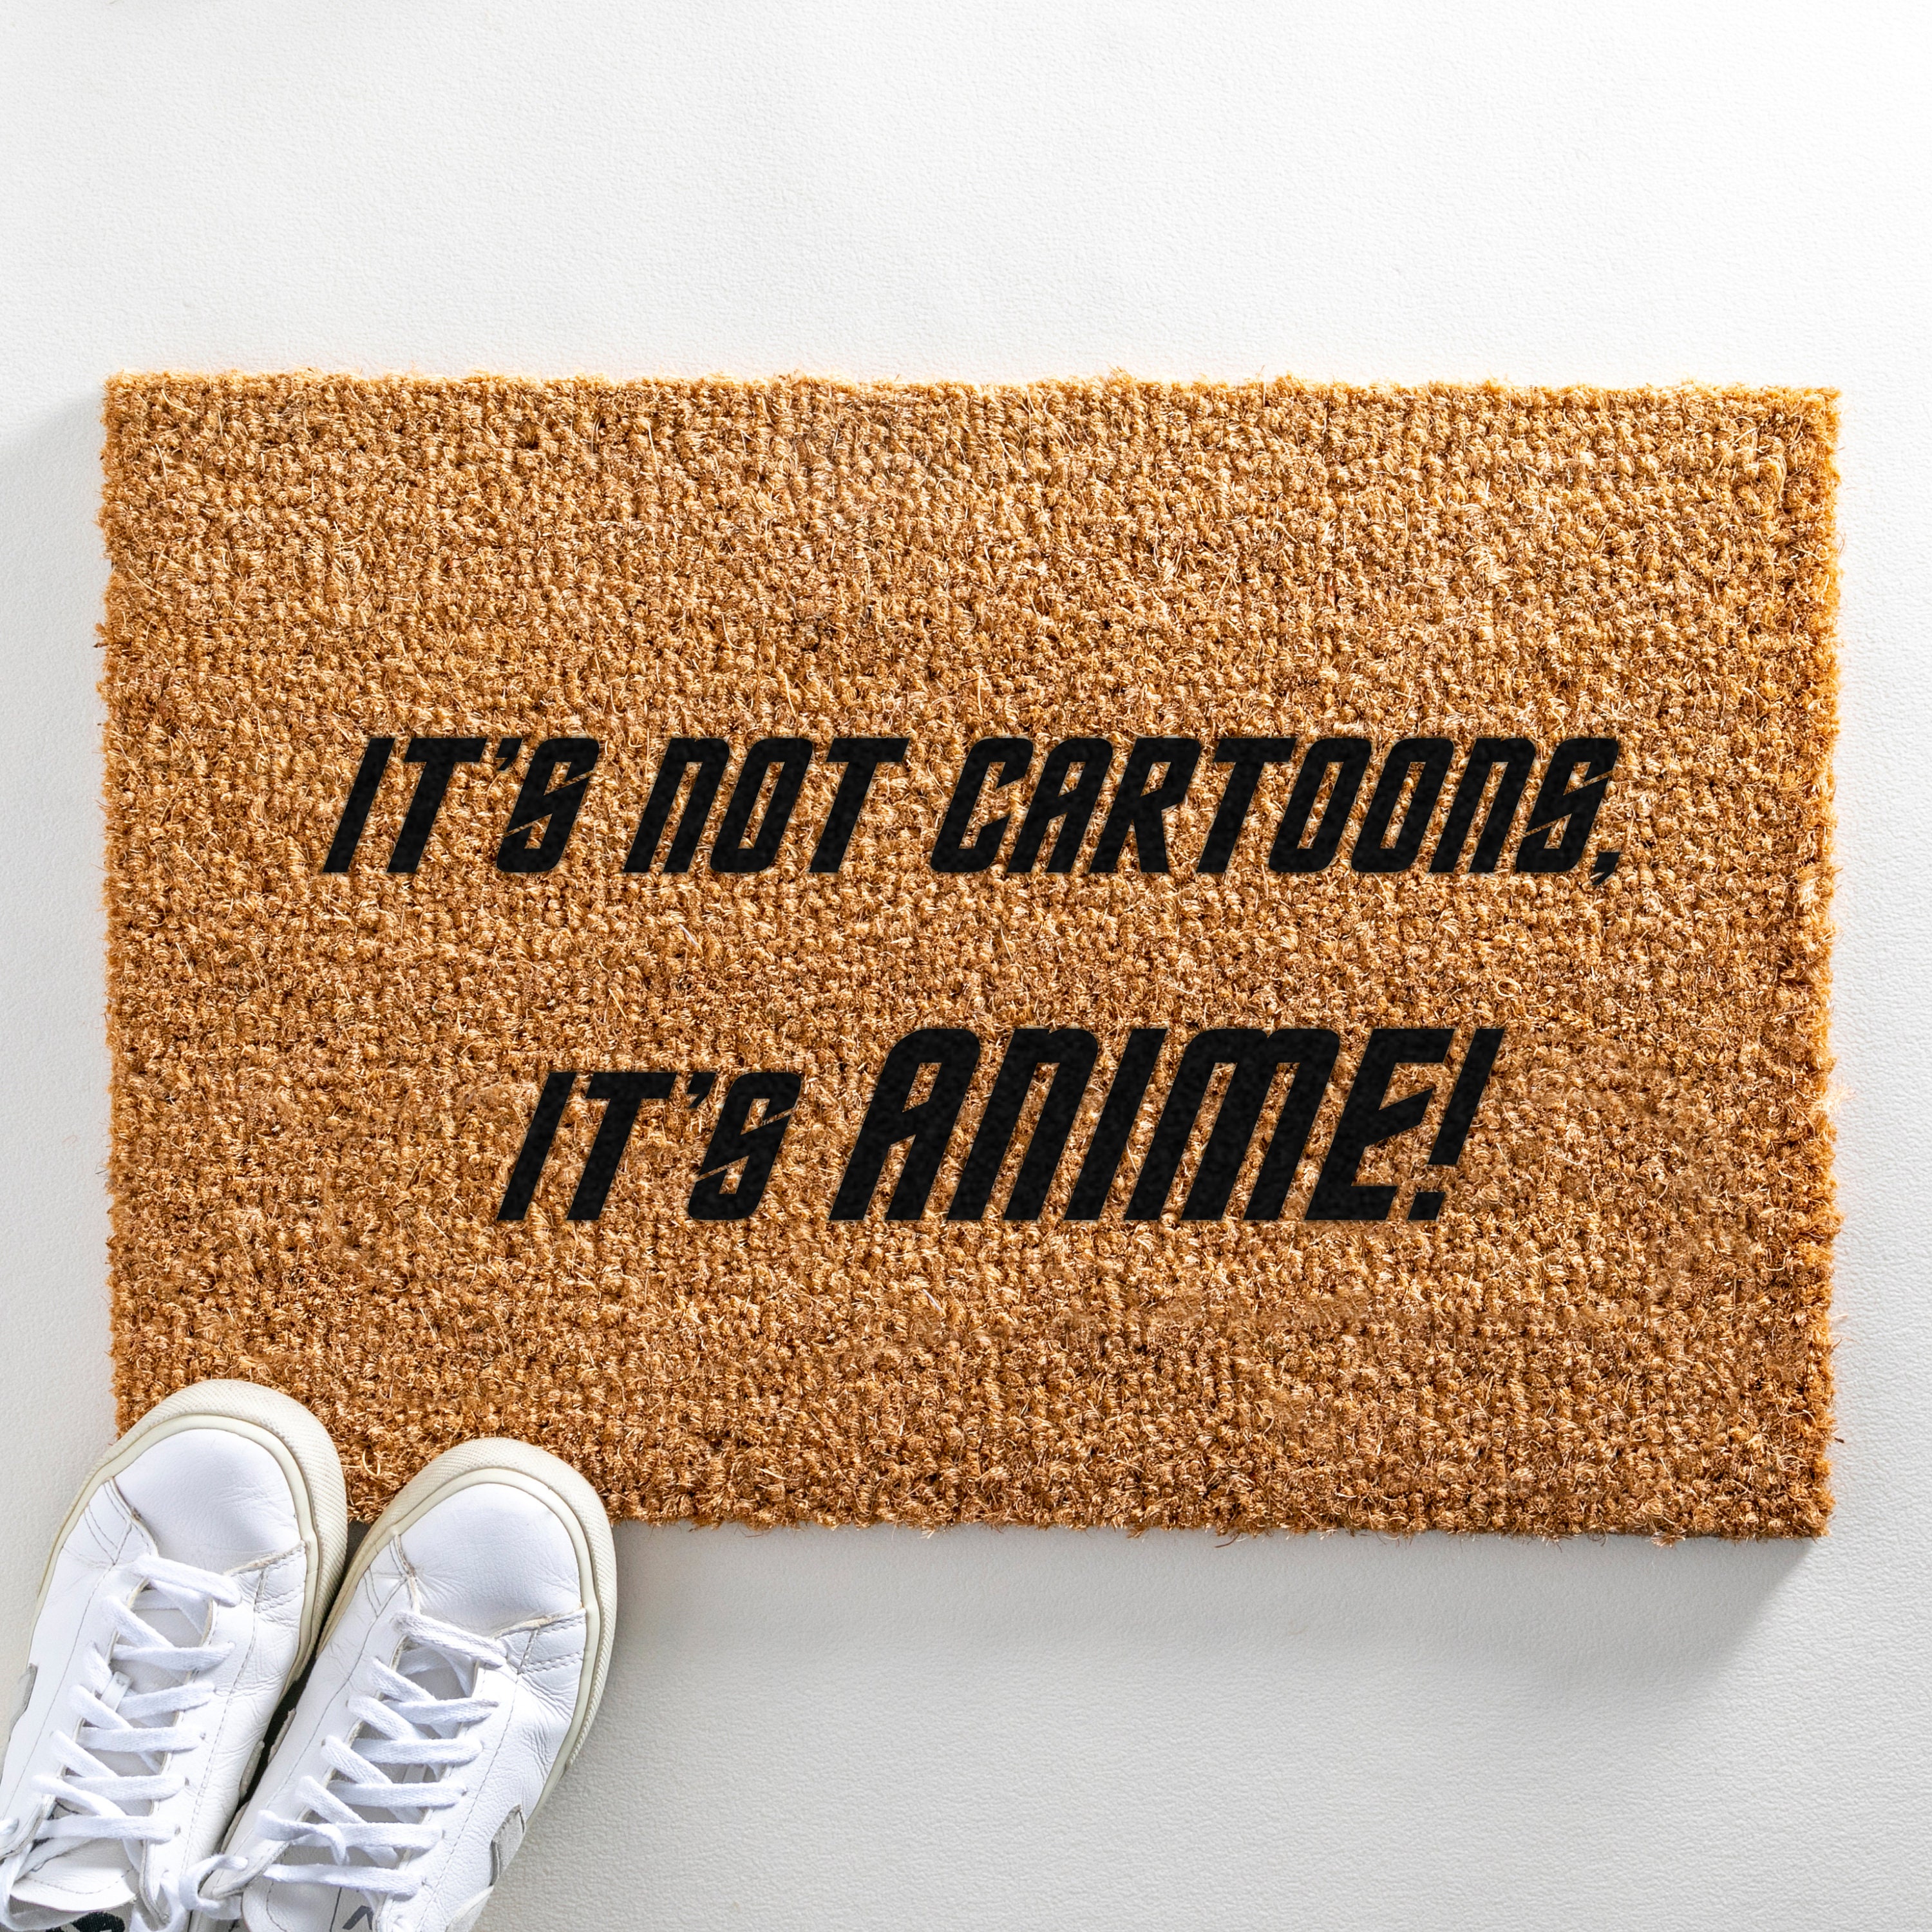 Funny Welcome Door Mat Doormat Anime Theme Welcome mats Anti-Slip